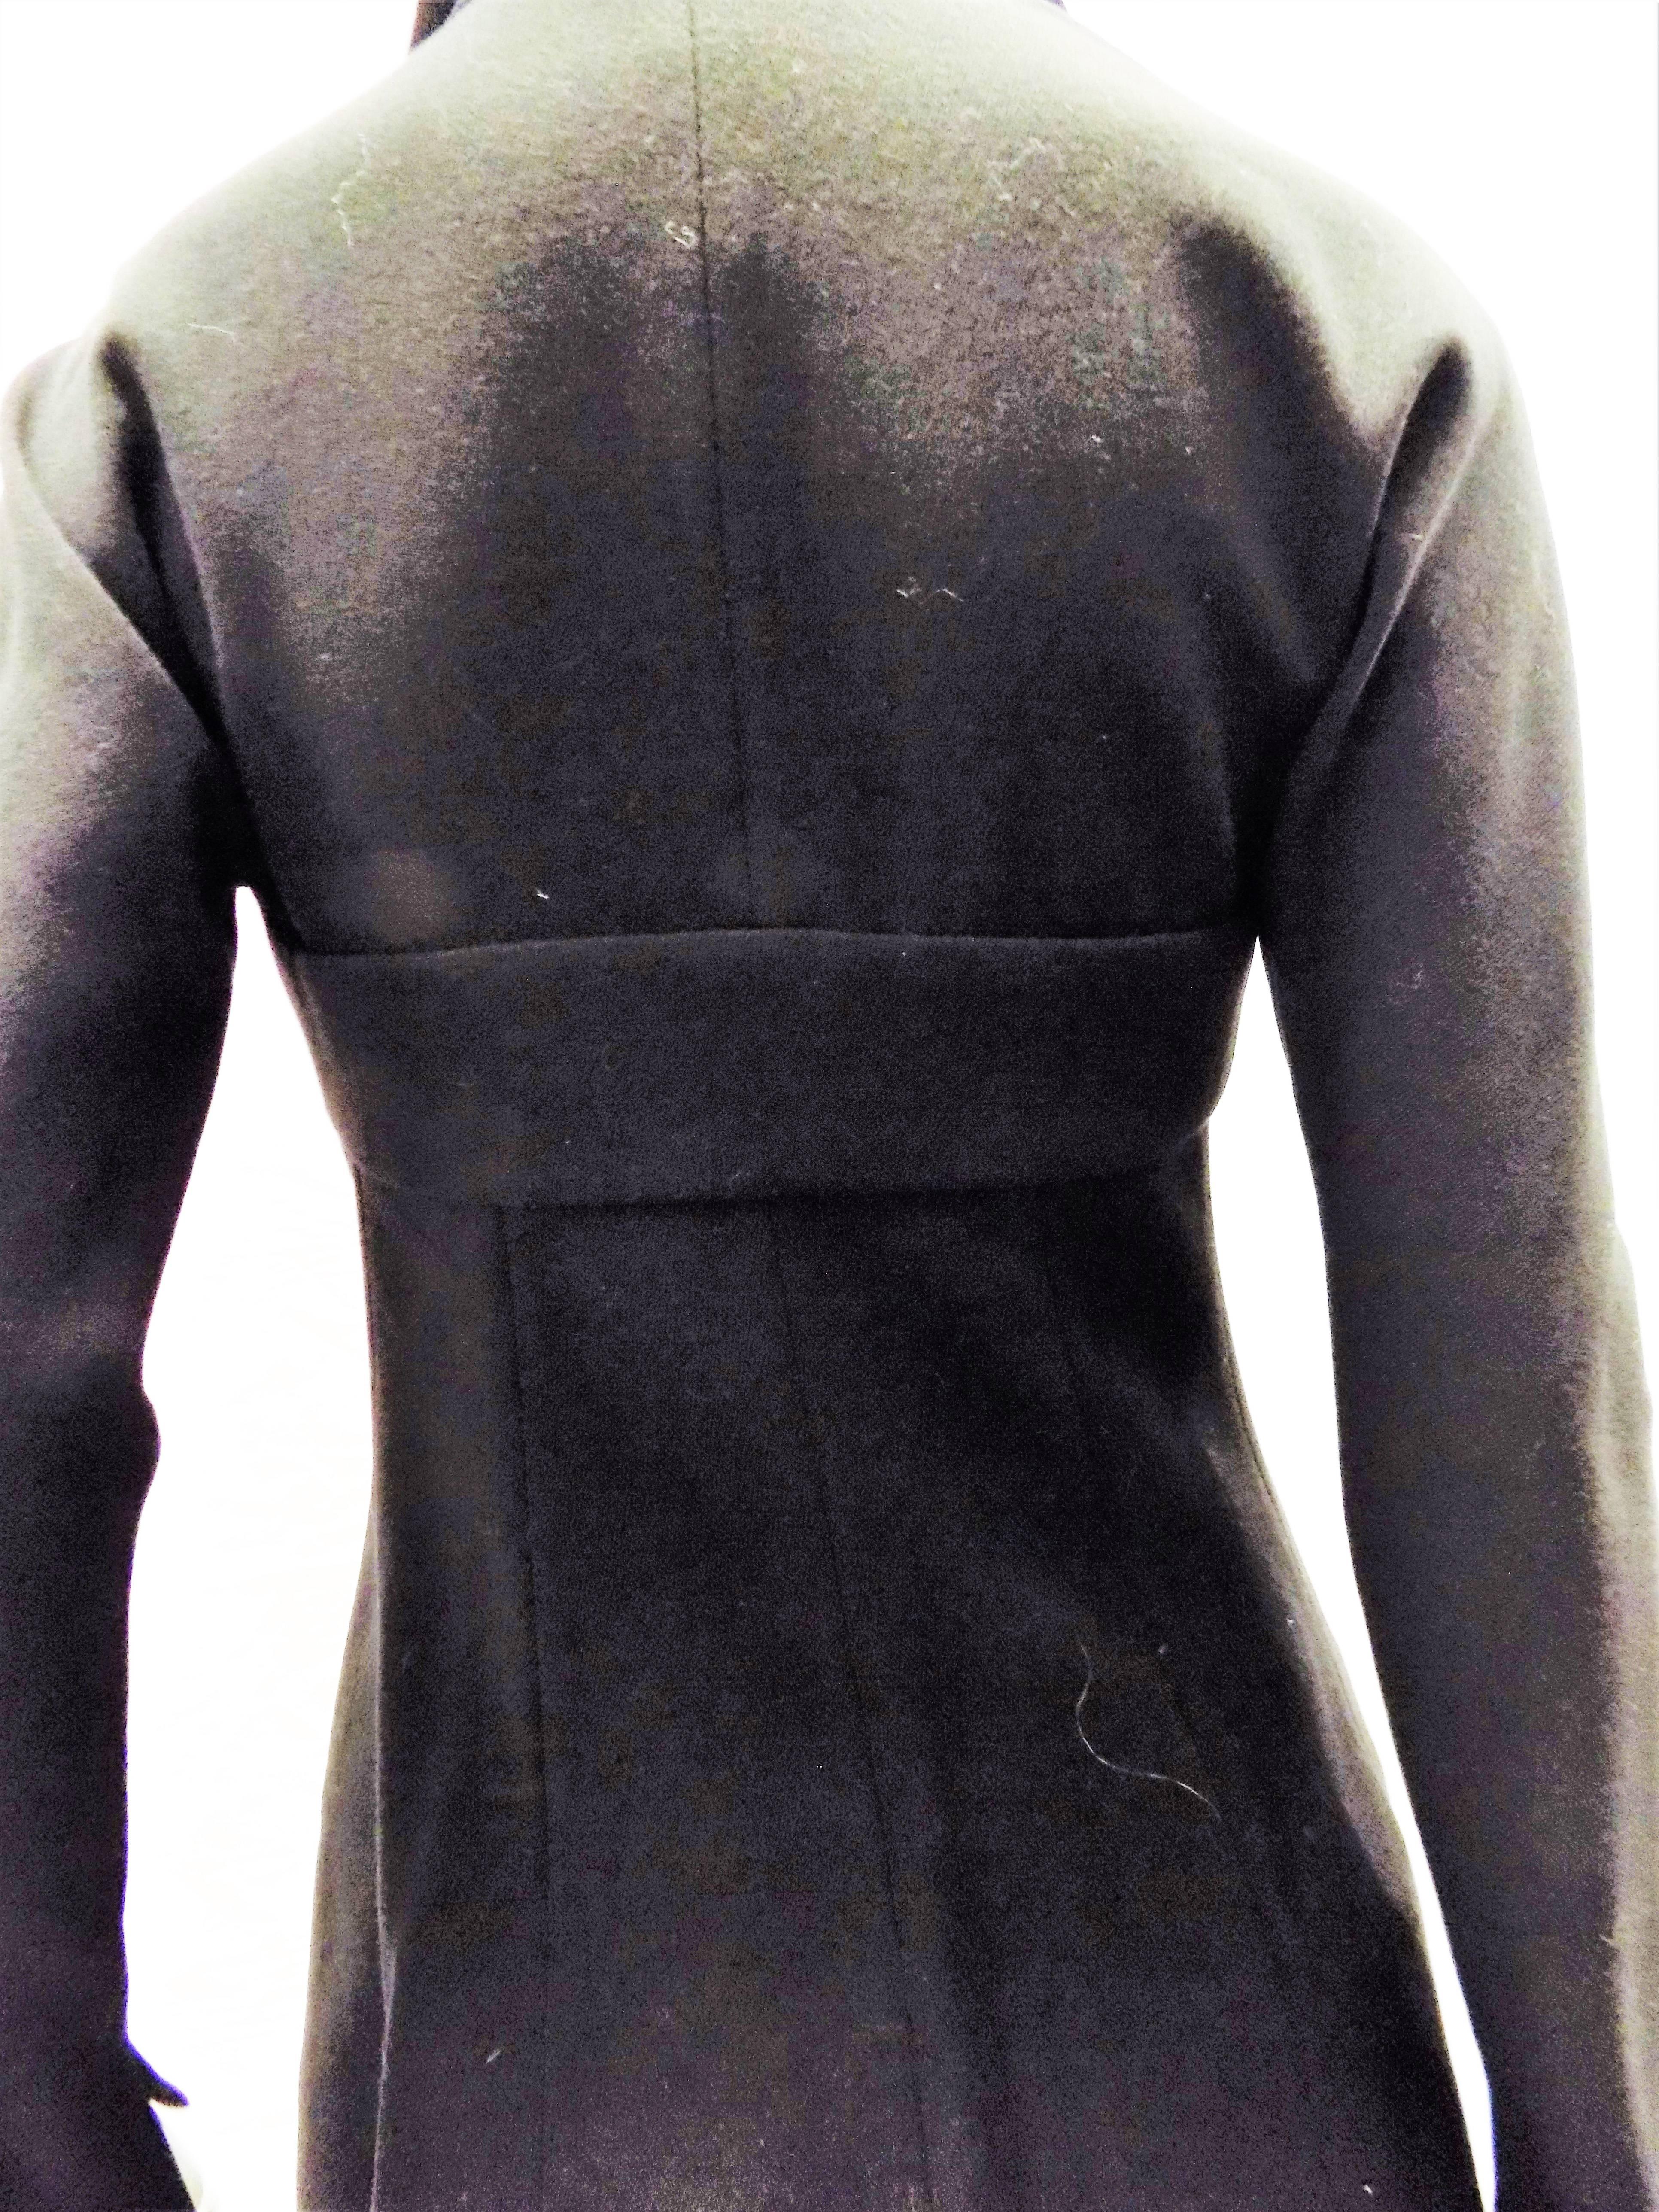  Chloe by Karl Lagerfeld Vintage black skirt suit  For Sale 4